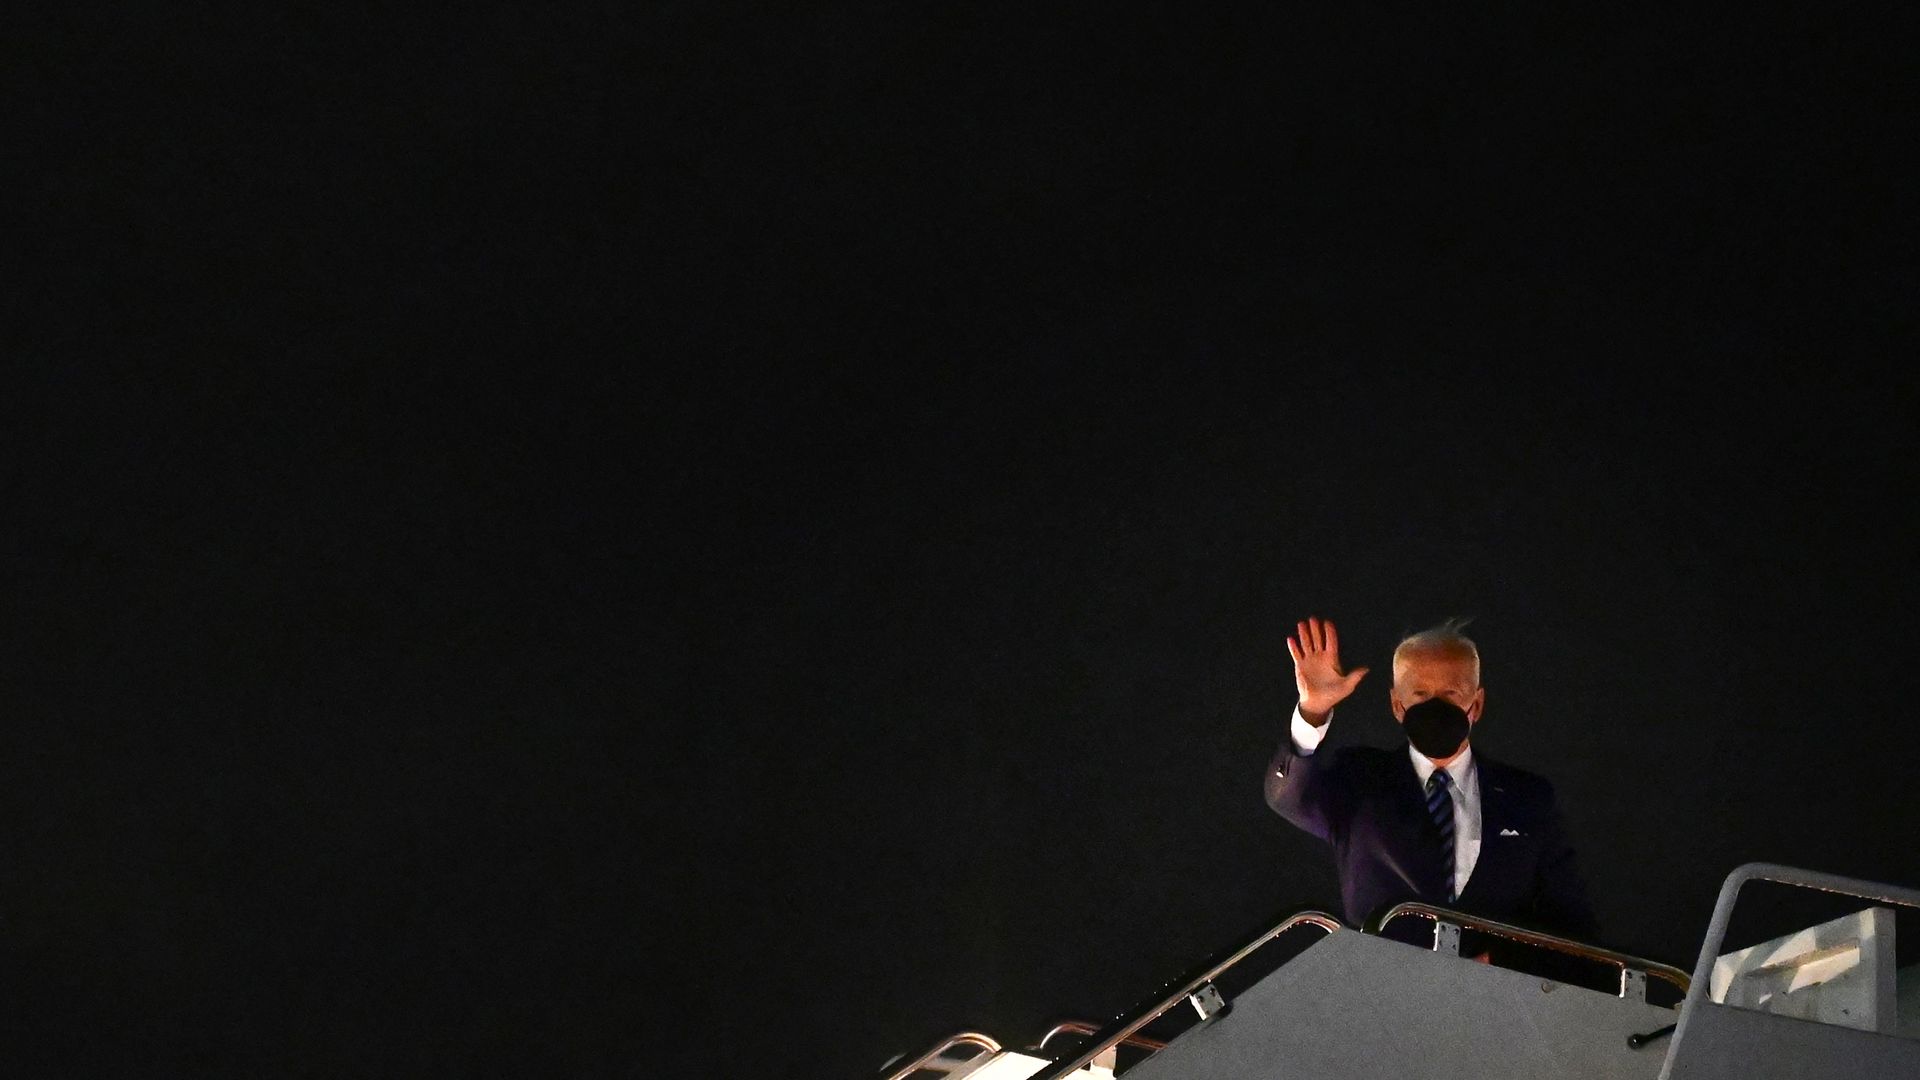 President Biden is seen waving as he leaves Andrews Air Force Base last week.